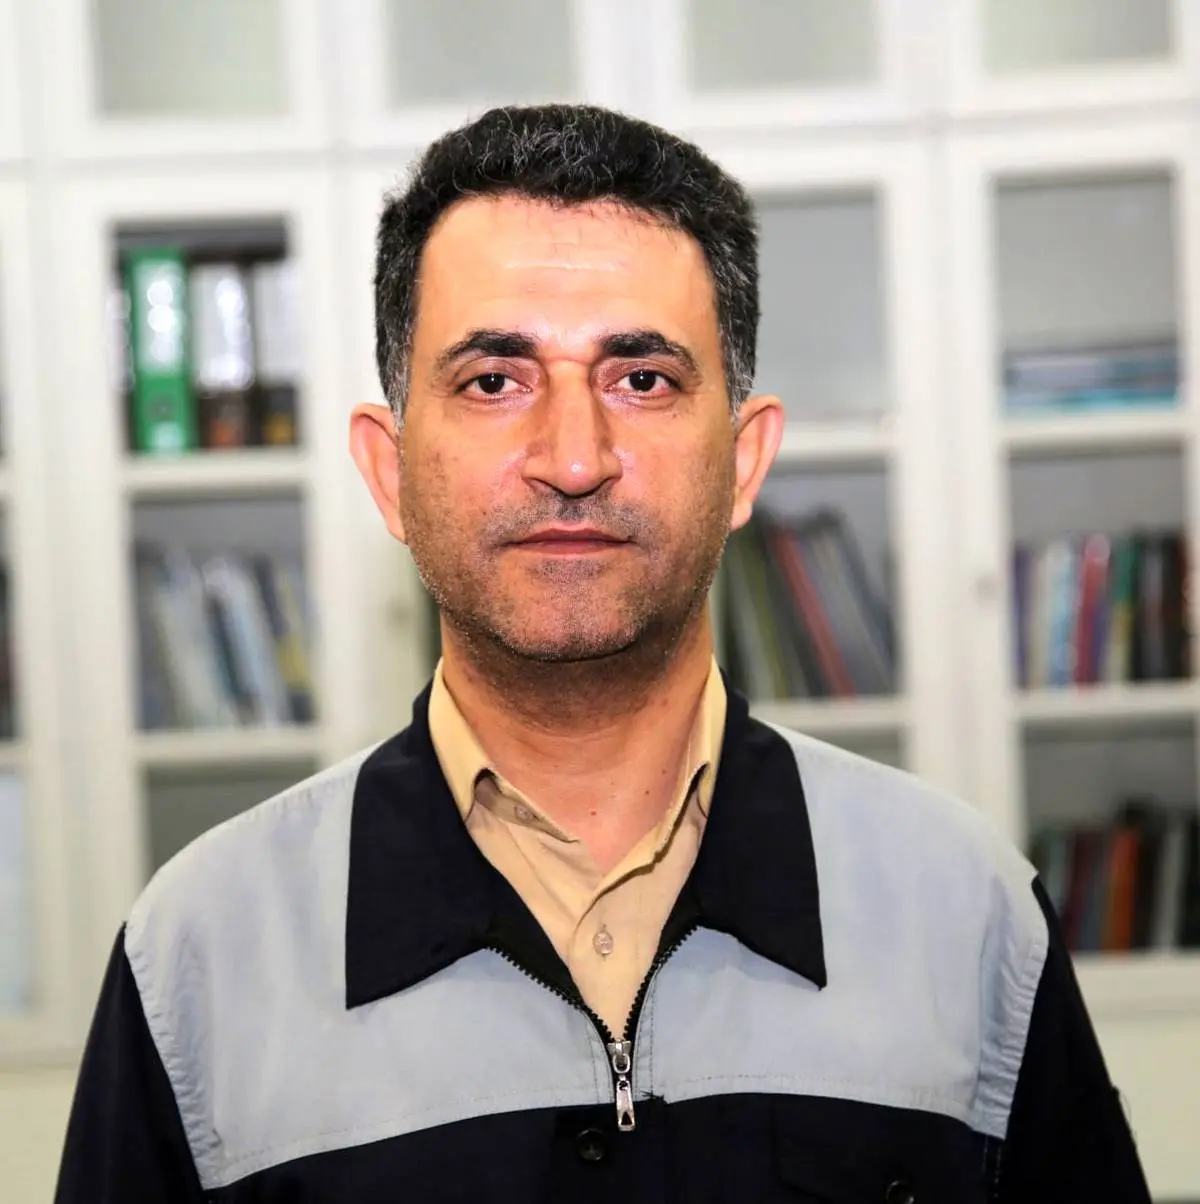 مهندس محمدجواد ذبیحی به سمت مدیر آگلومراسیون شرکت ذوب آهن منصوب گردید